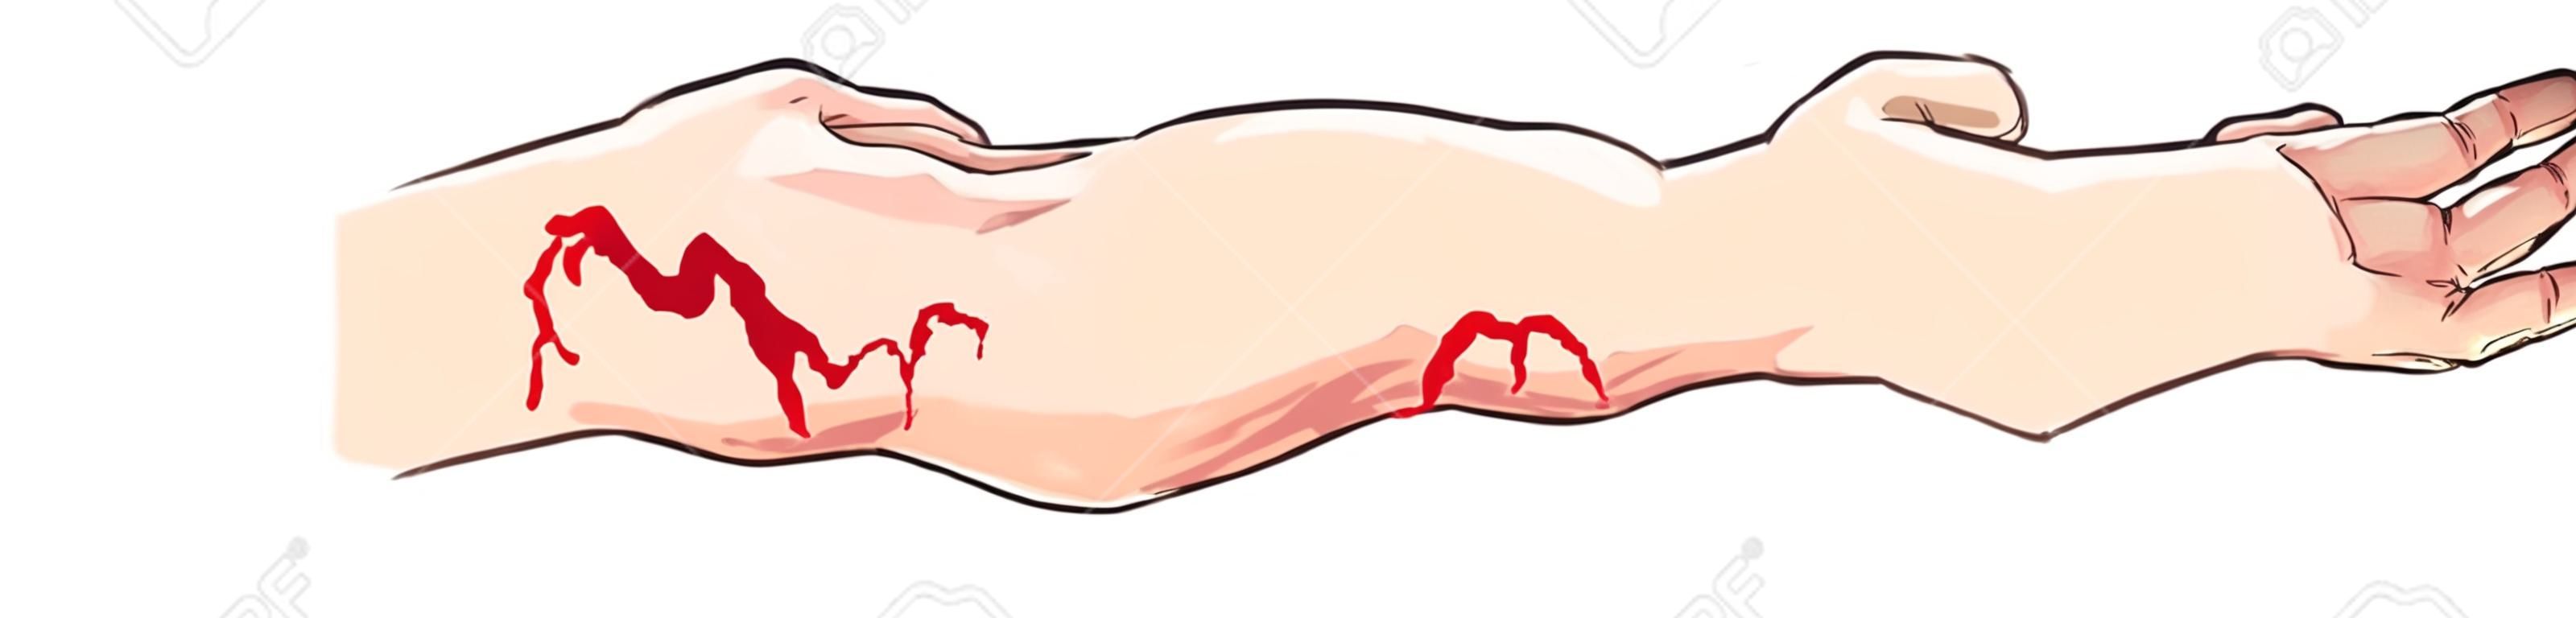 ilustración vectorial de un arterial y hemorragia venosa